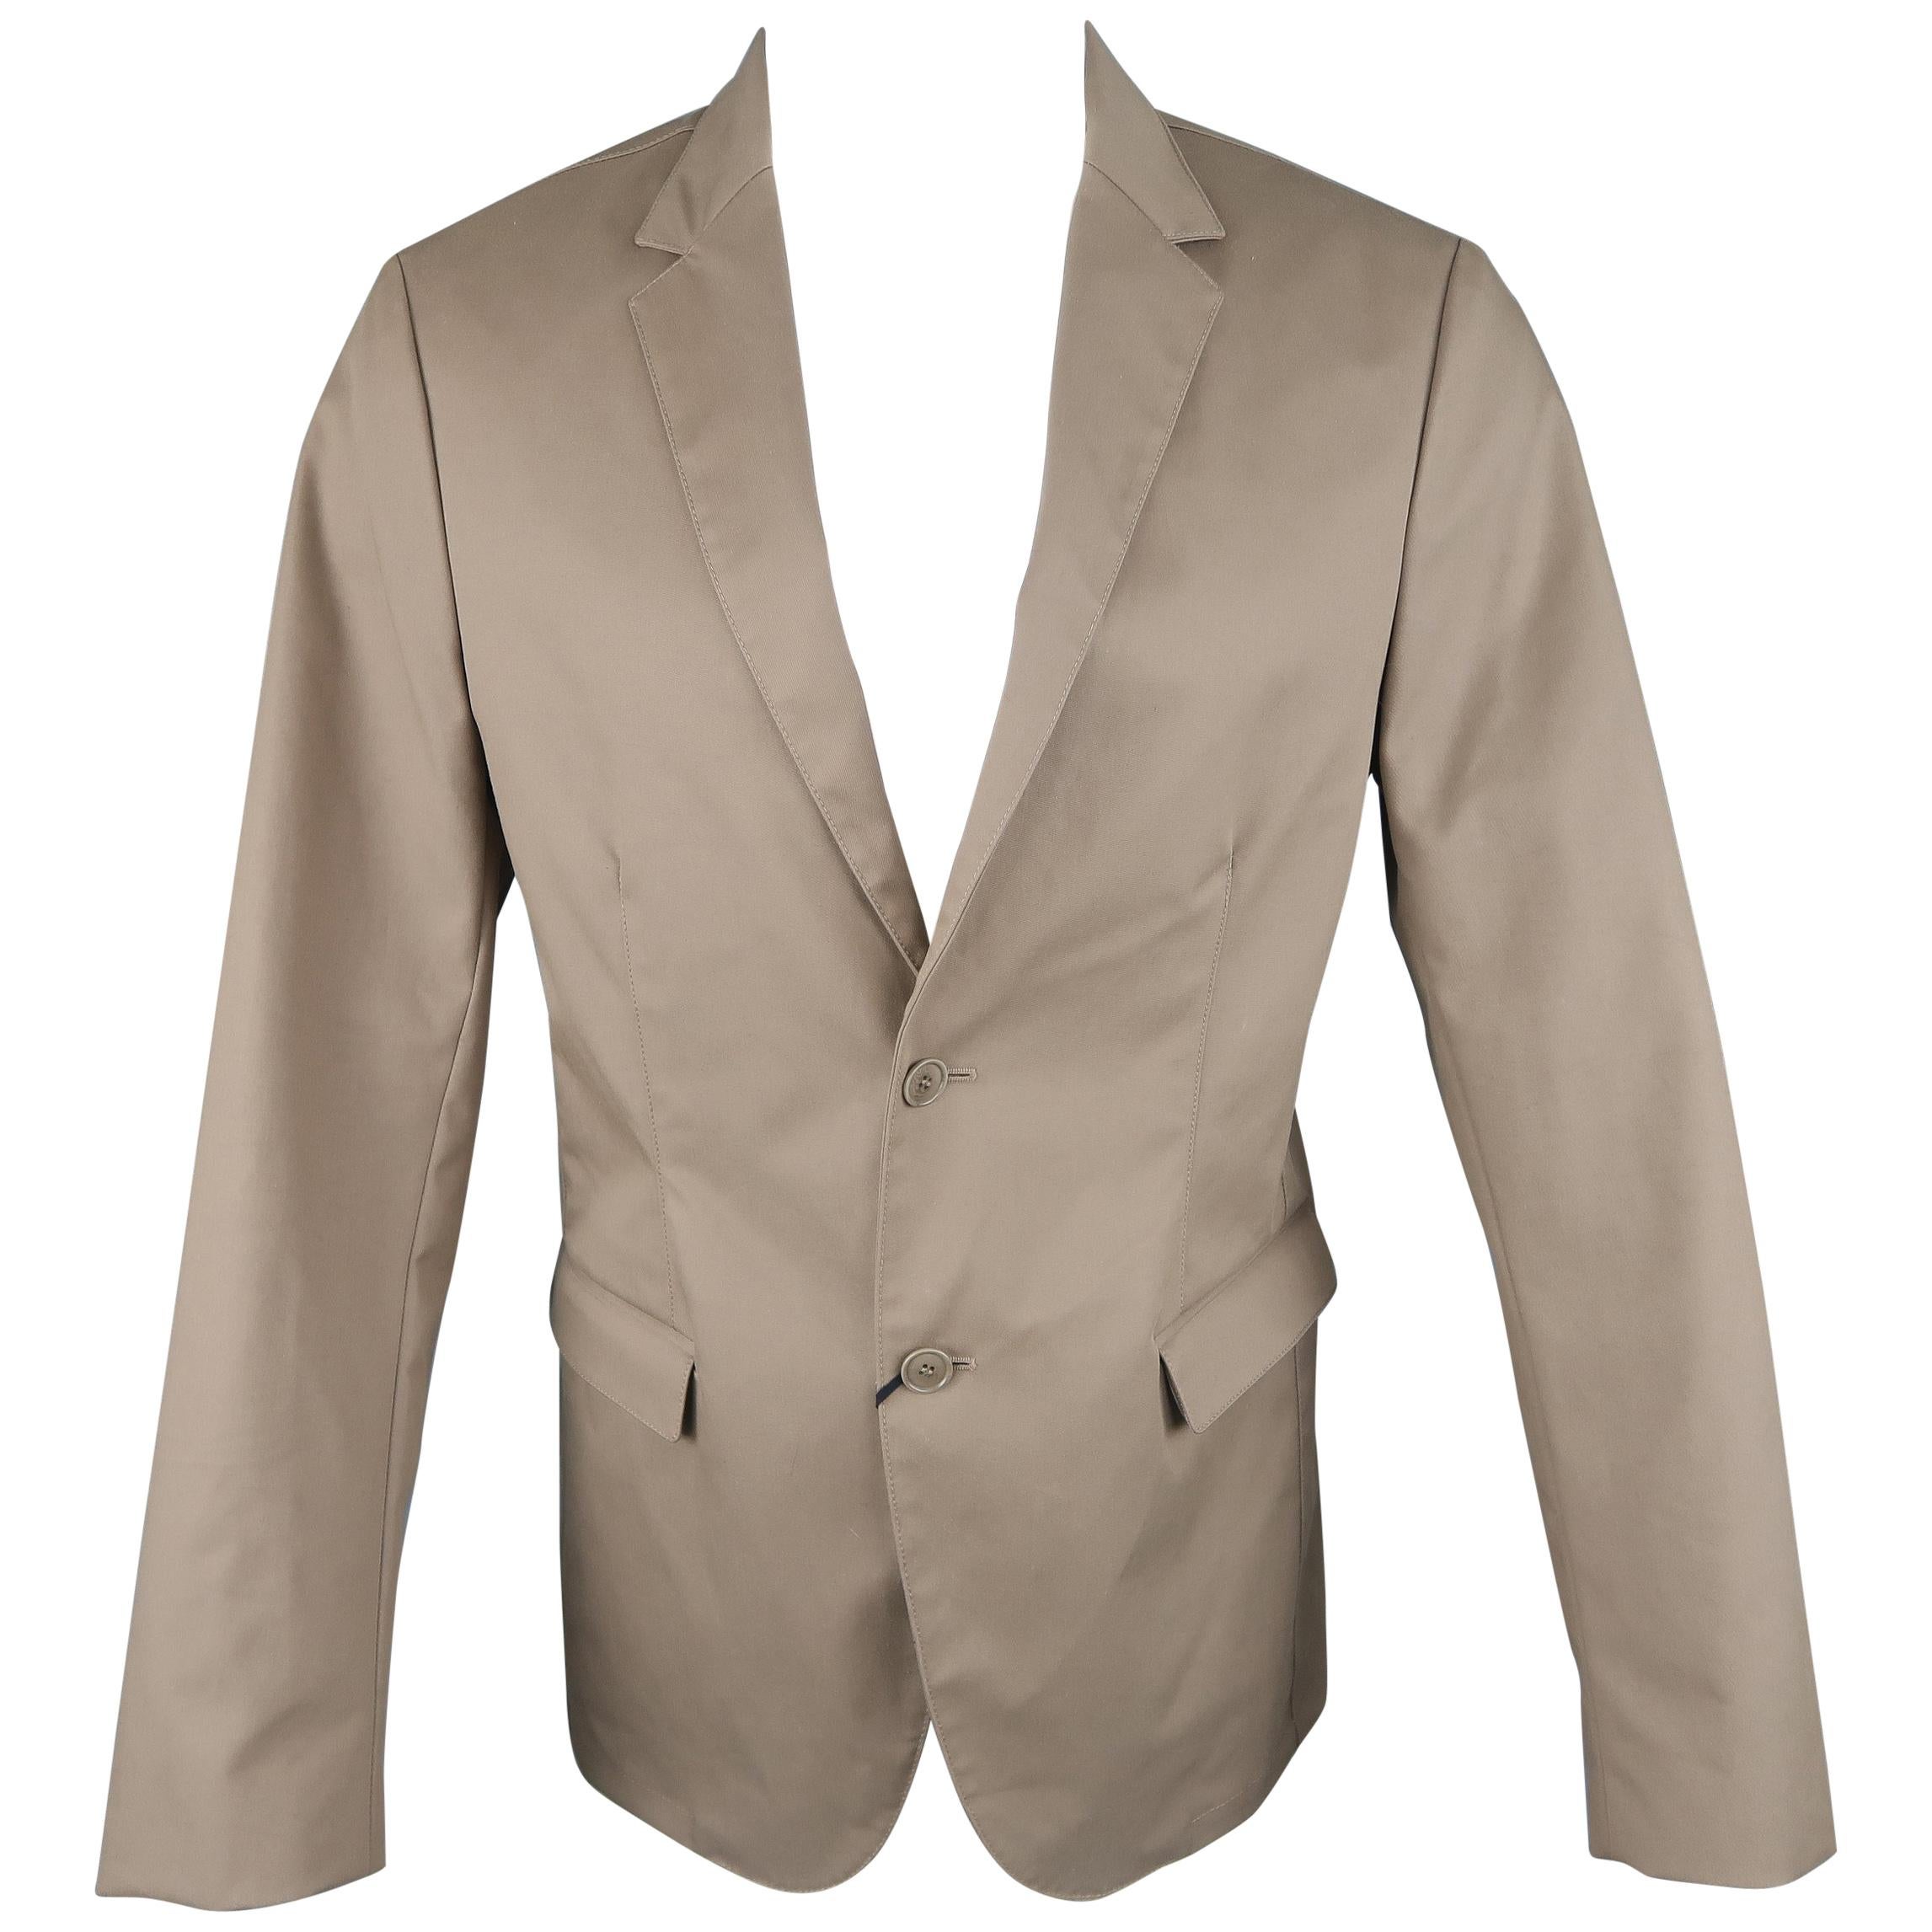 CALVIN KLEIN COLLECTION 38 Taupe Cotton Blend Notch Lapel Sport Coat Jacket